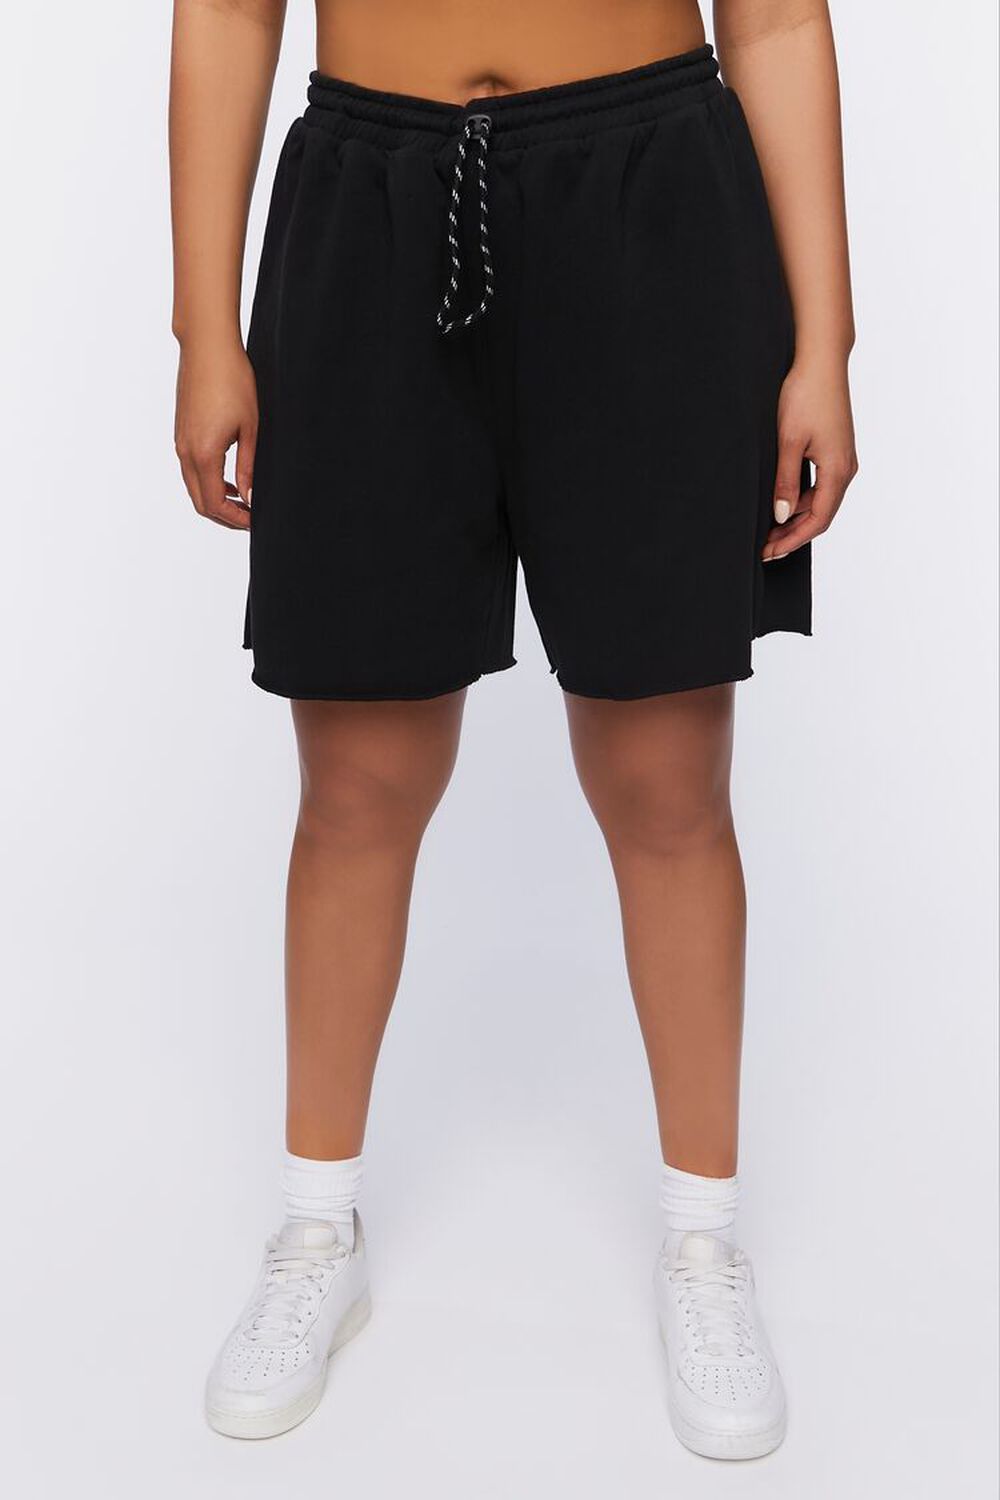 BLACK Plus Size Active Drawstring Shorts, image 2